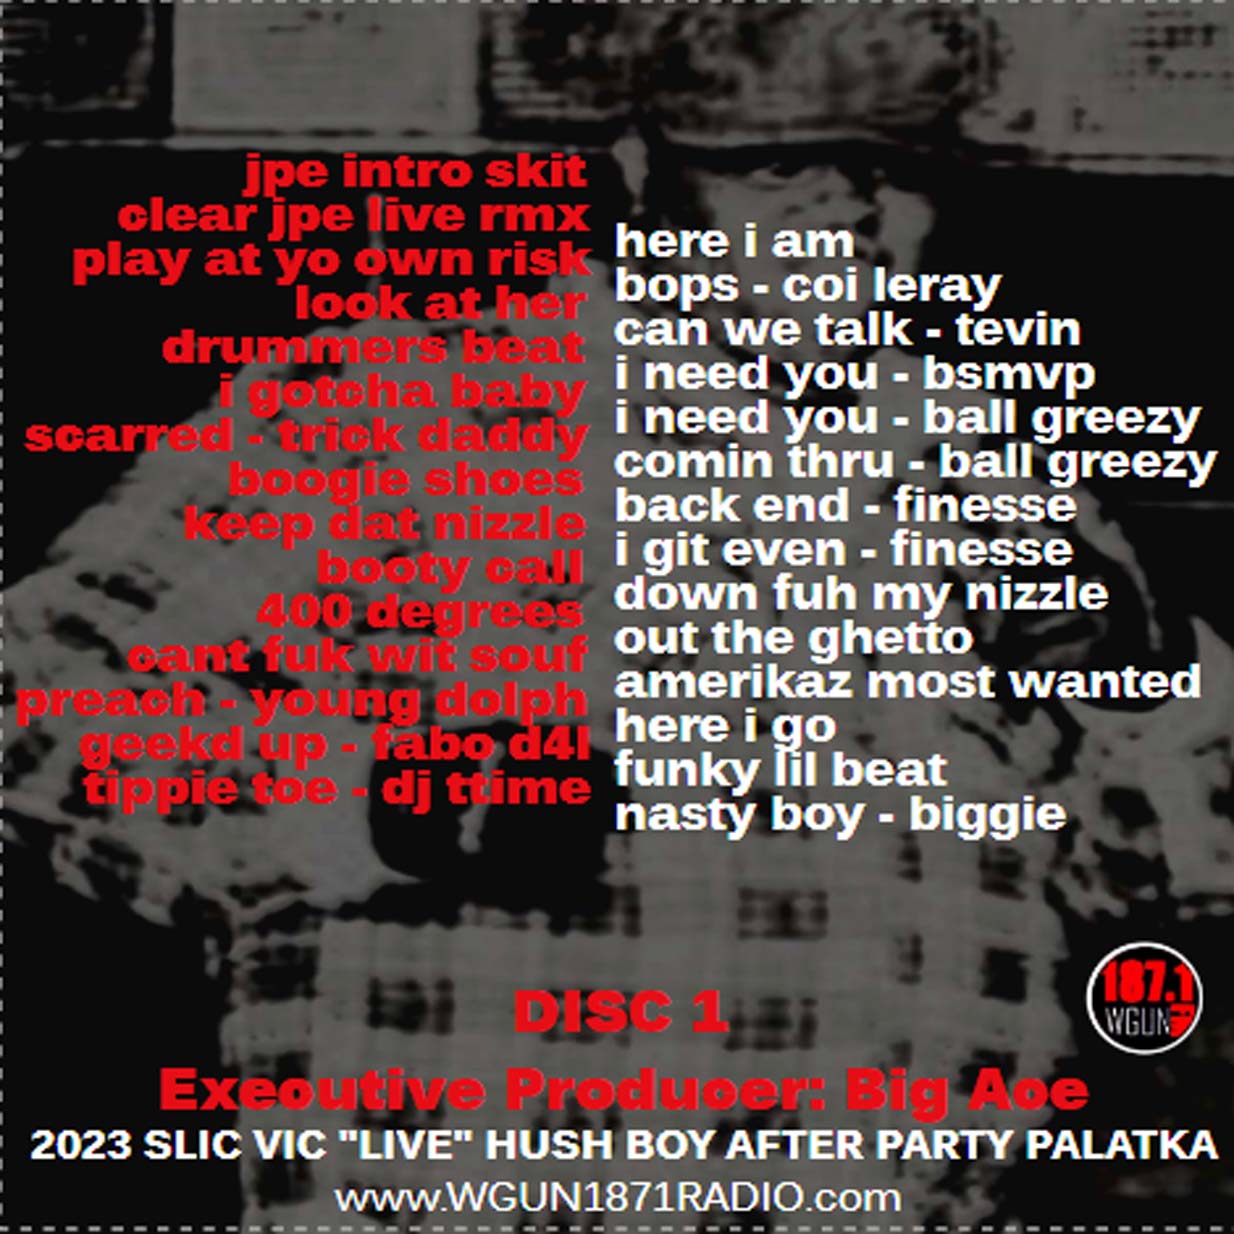 SLIC VIC - "LIVE" IN PALATKA HUSH BOY GDAY BASH c2023